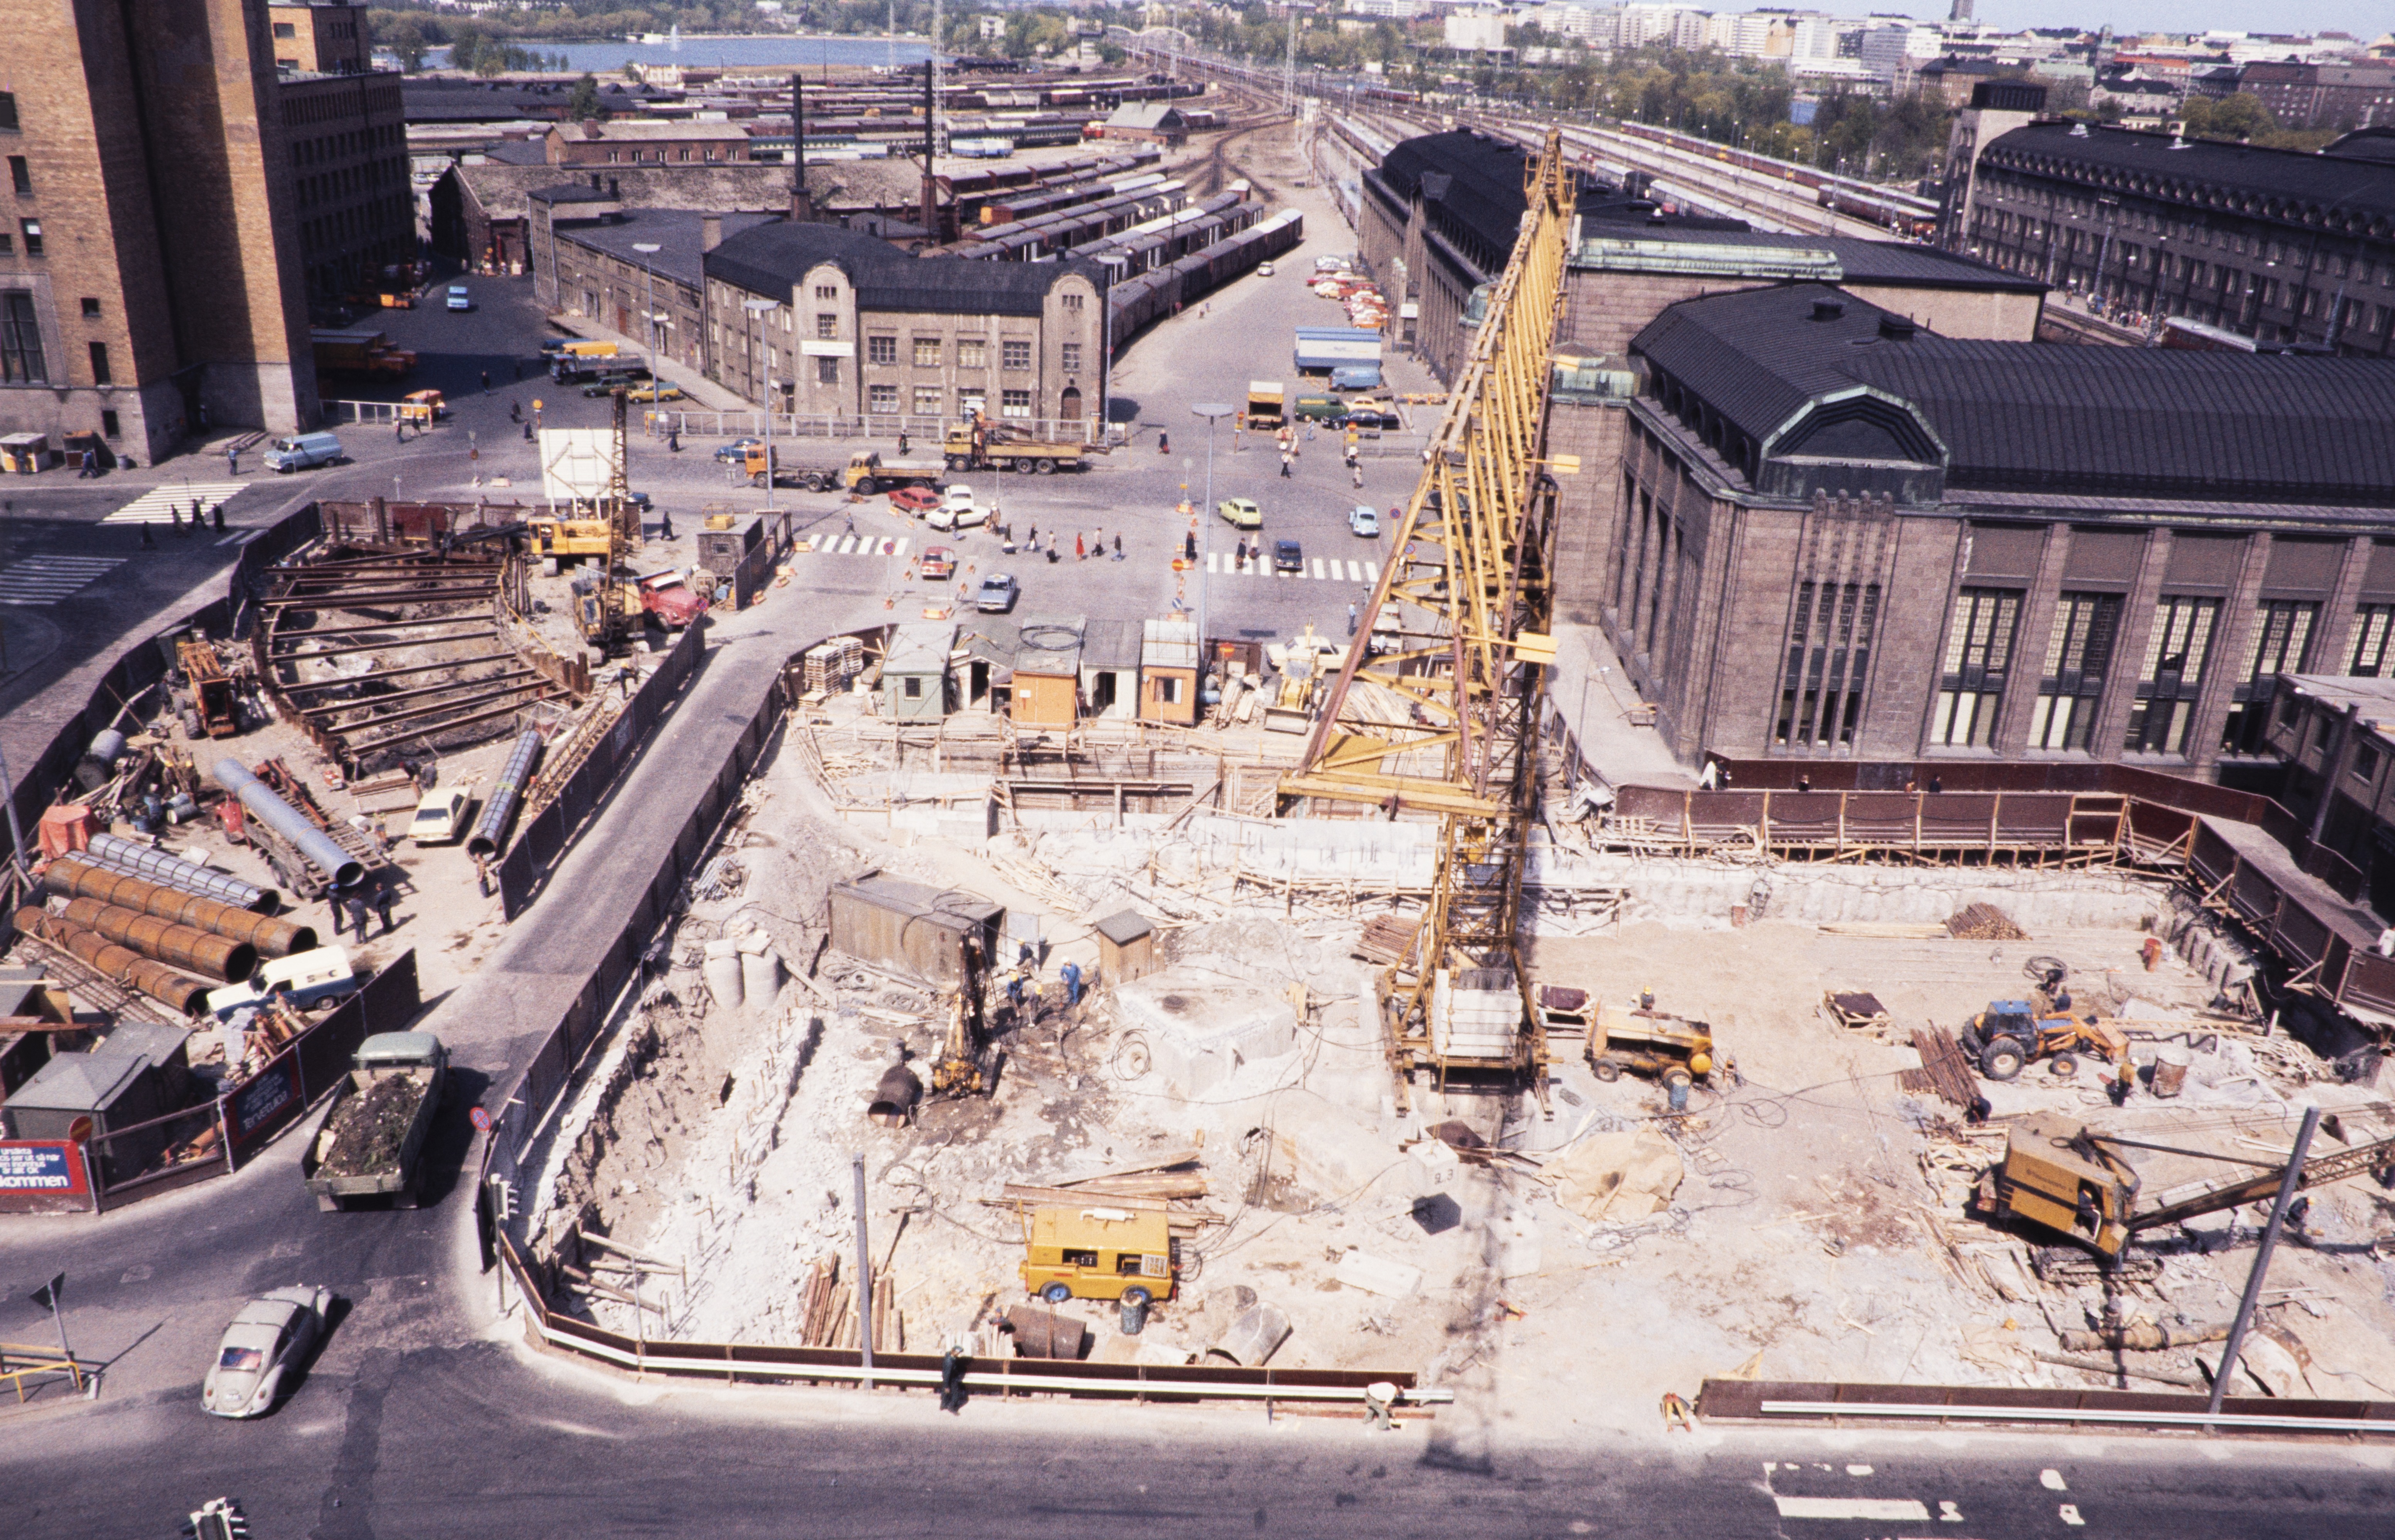 Kaivokadun metroaseman rakentaminen. Näkymä Kaivotalosta kohti Asema-aukiota, jossa on Helsingin metron rakennustyömaa.